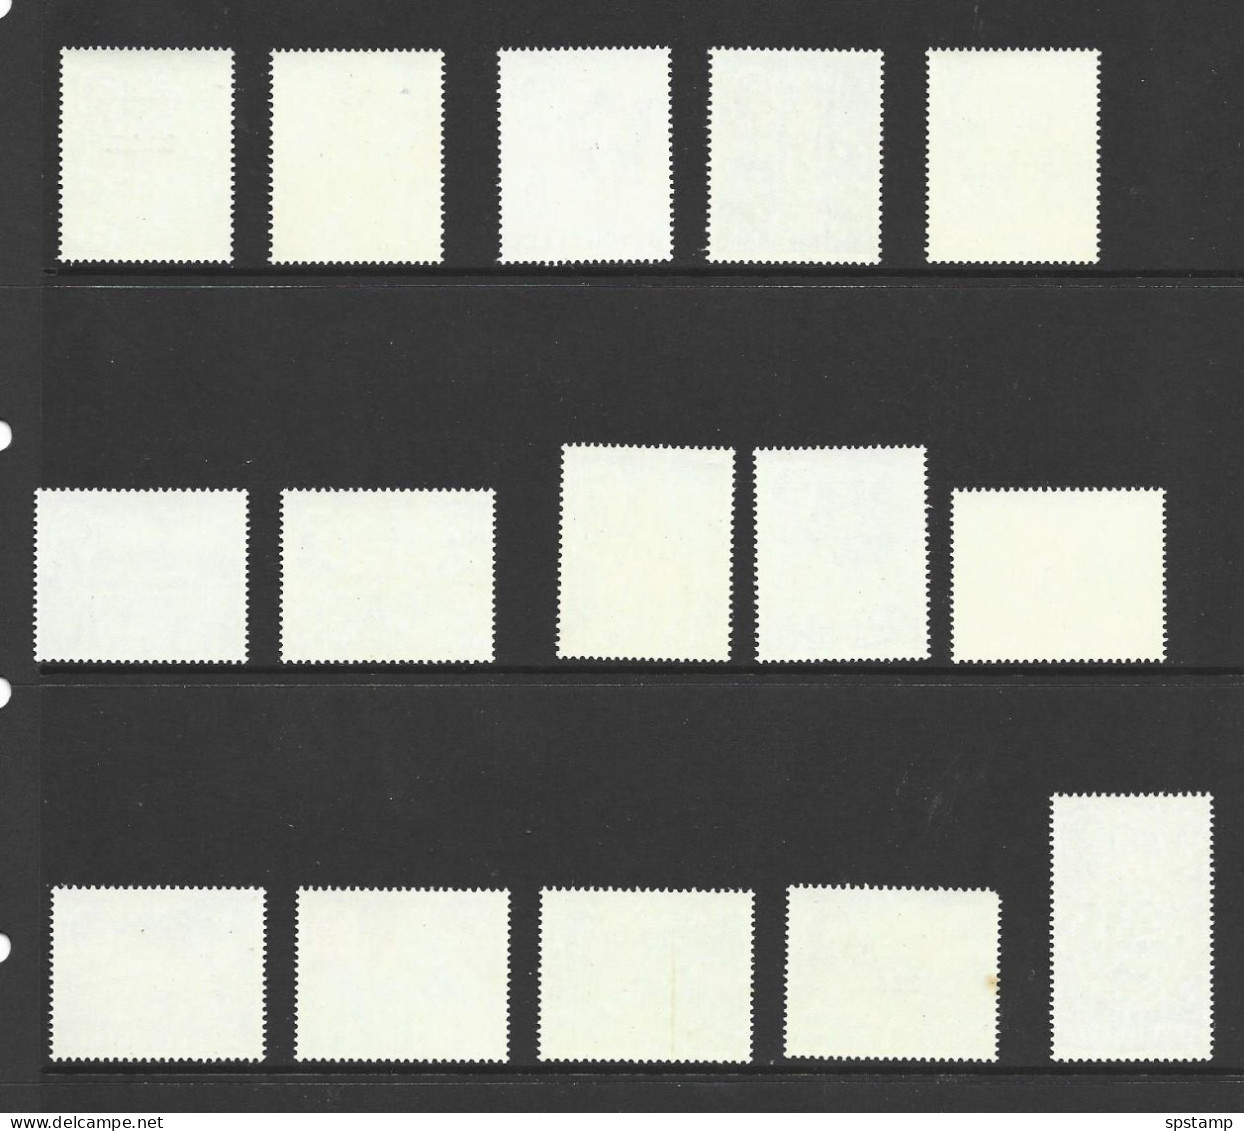 BIOT 1968 Overprints On Seychelles Definitives Set Of 15 MNH , 5R Faulty ,one Other With Gum Mark - Territoire Britannique De L'Océan Indien